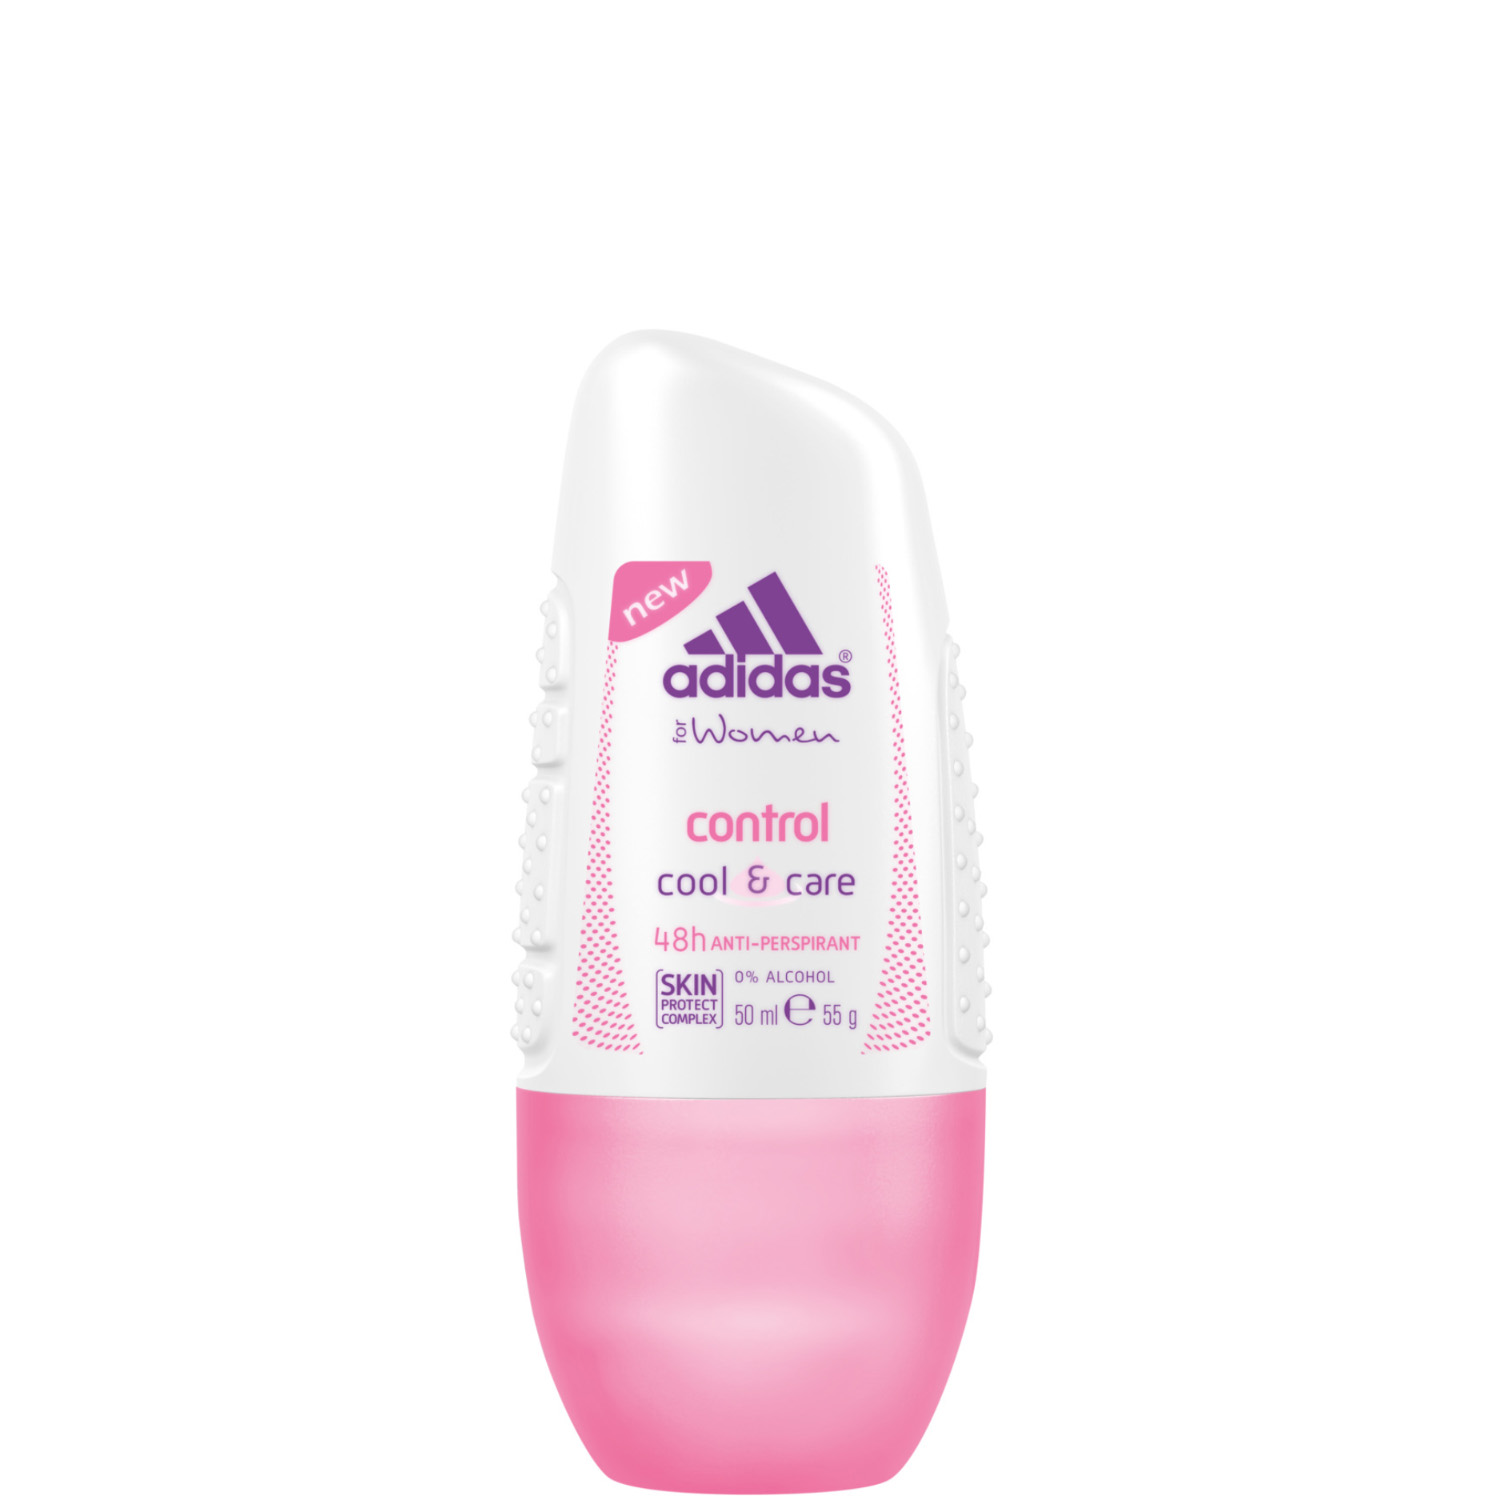 Adidas for Women Control 48H Deodorant Roll-On 50ml